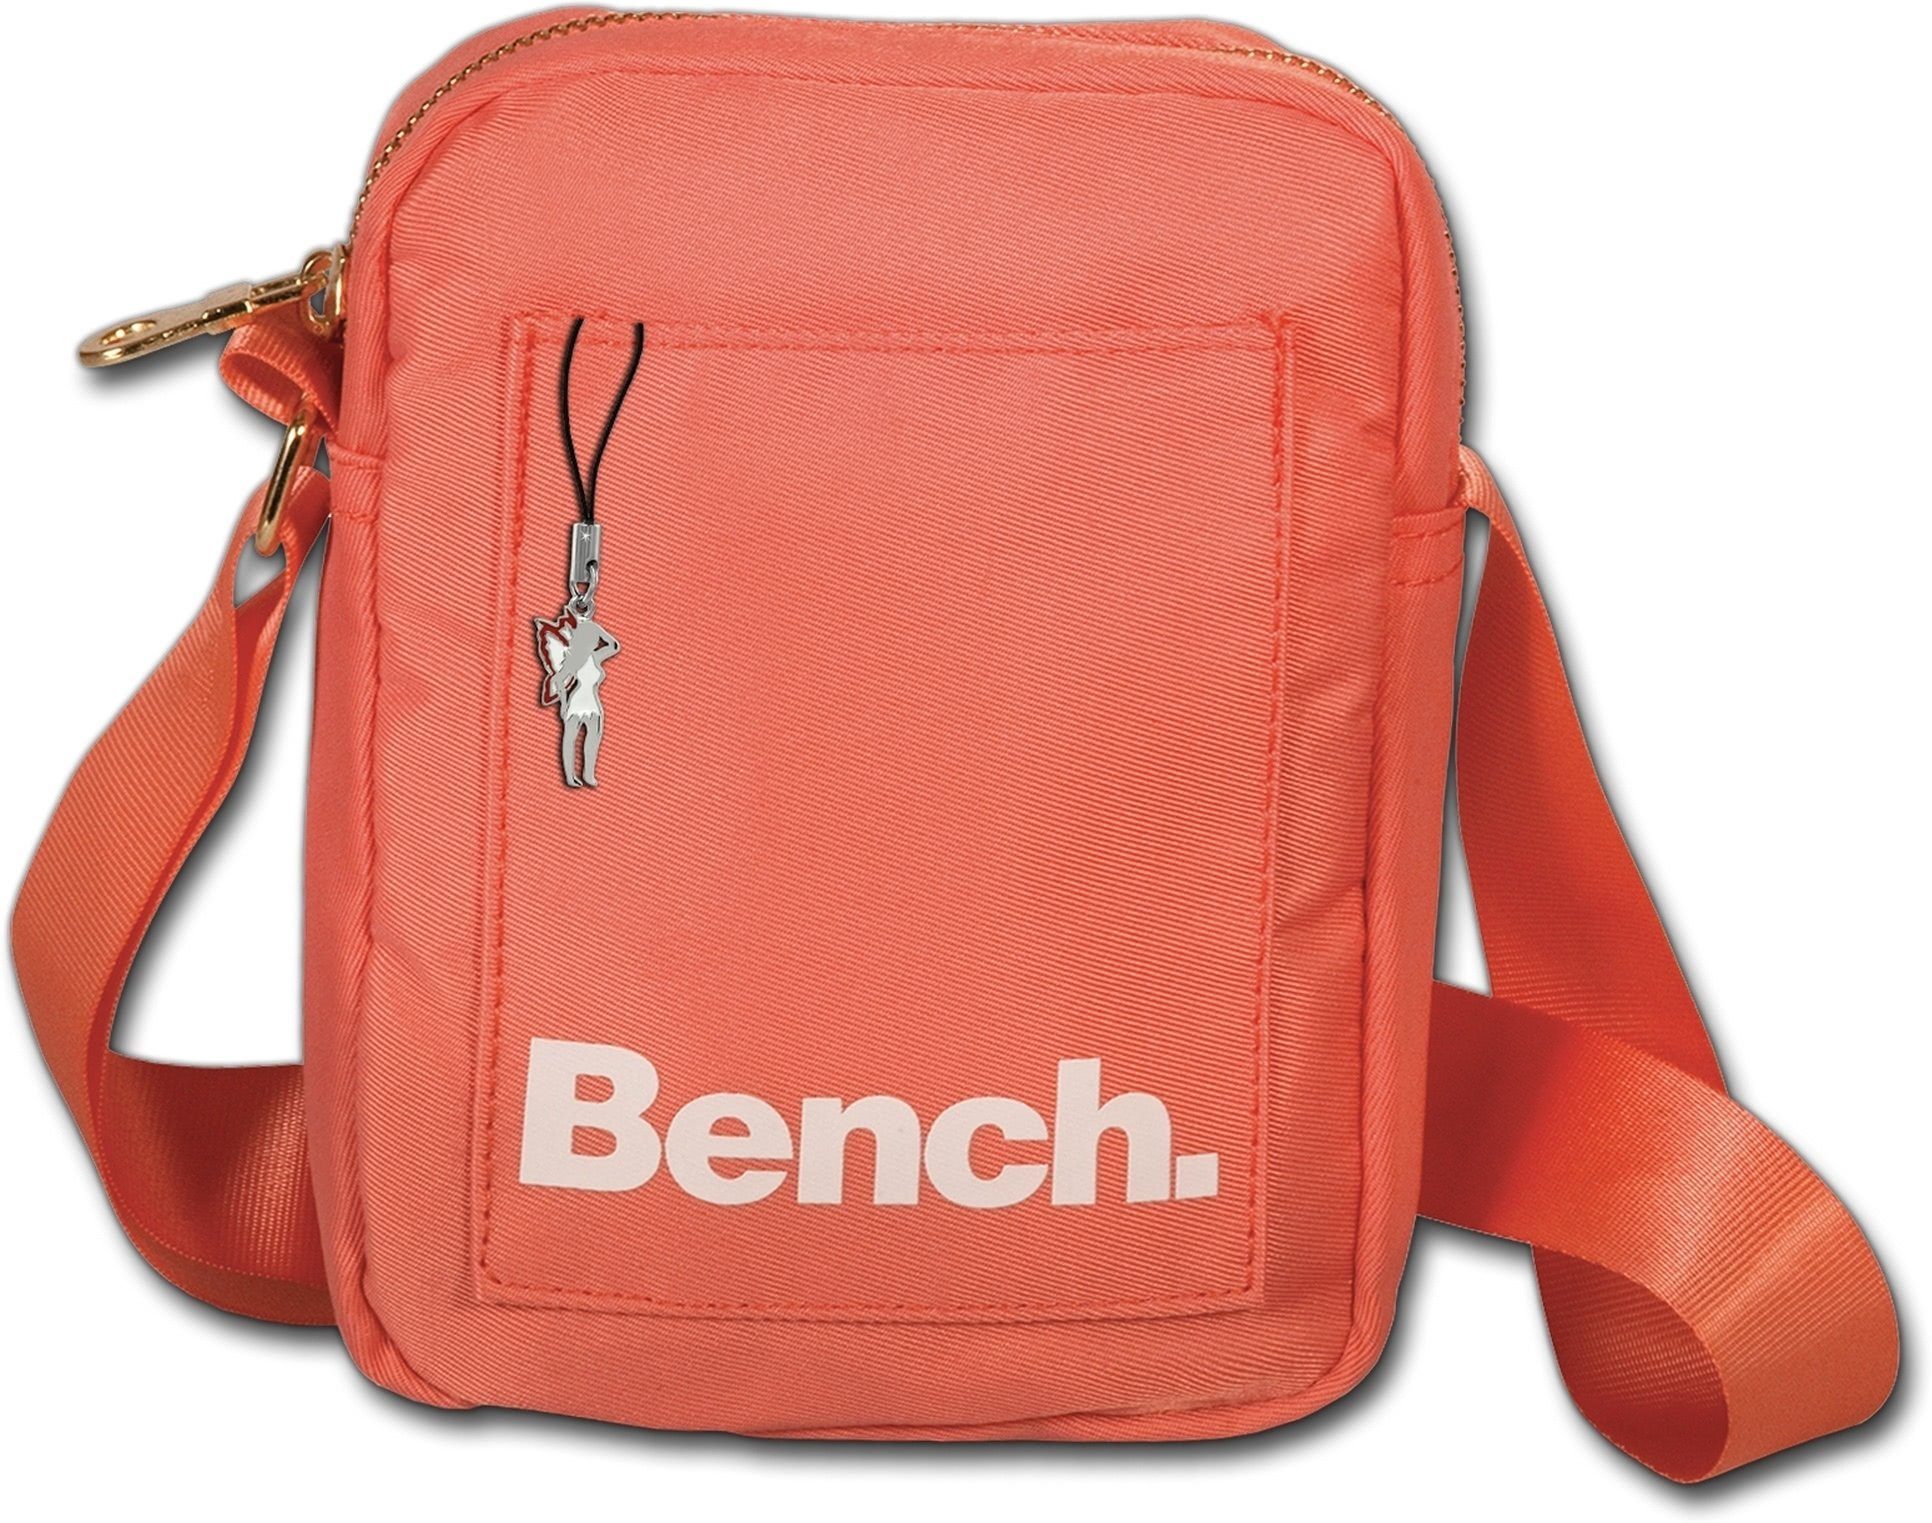 Bench. Umhängetasche Bench sportliche MiniBag Umhängetasche, Damen, Jugend  Tasche aus Nylon, Größe ca. 14cm in orange, koralle